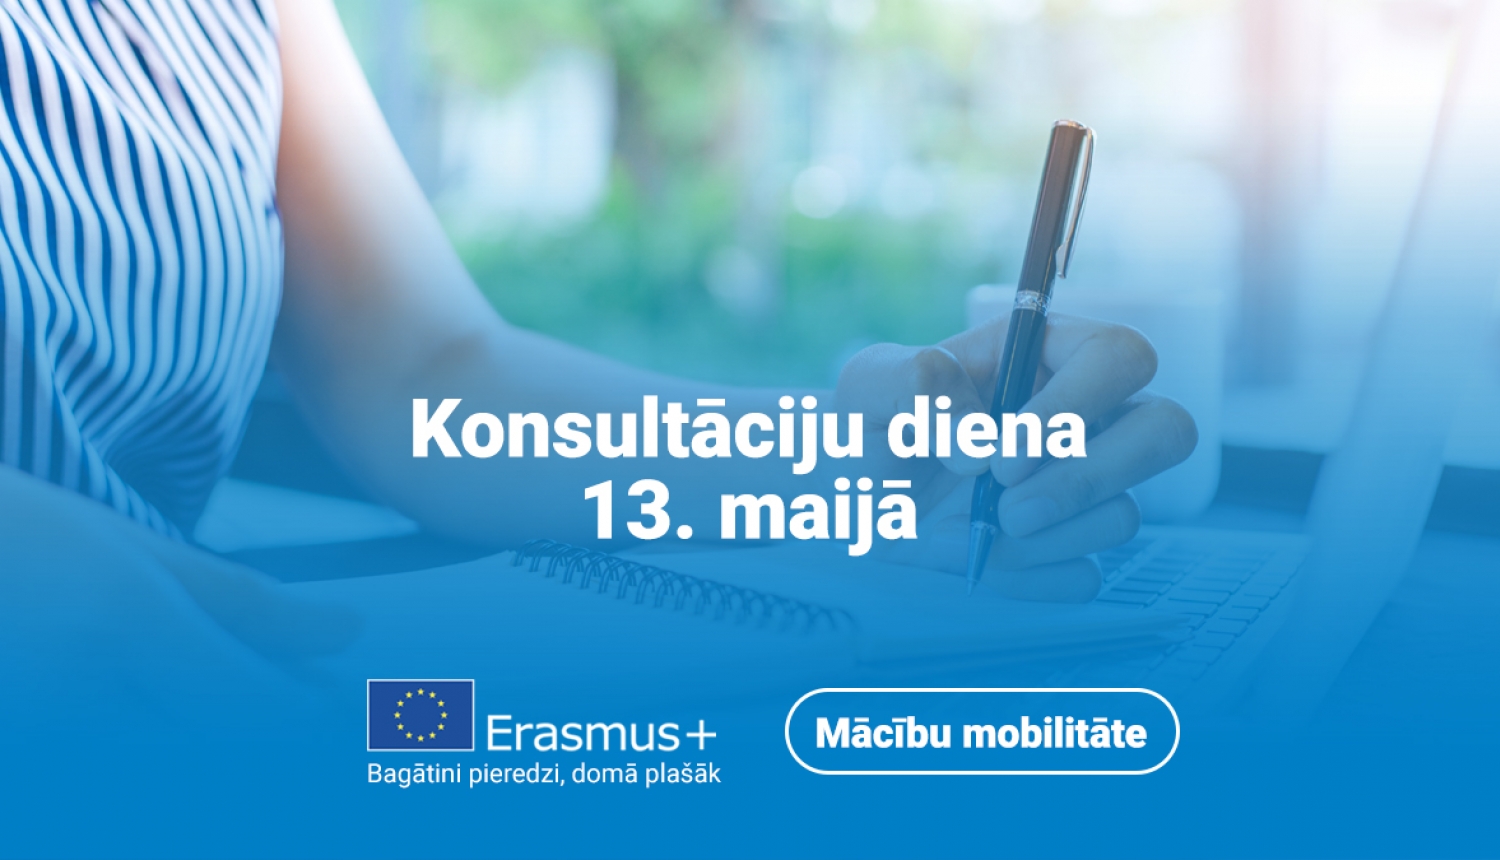 Erasmus konsultaciju diena 13. maijs